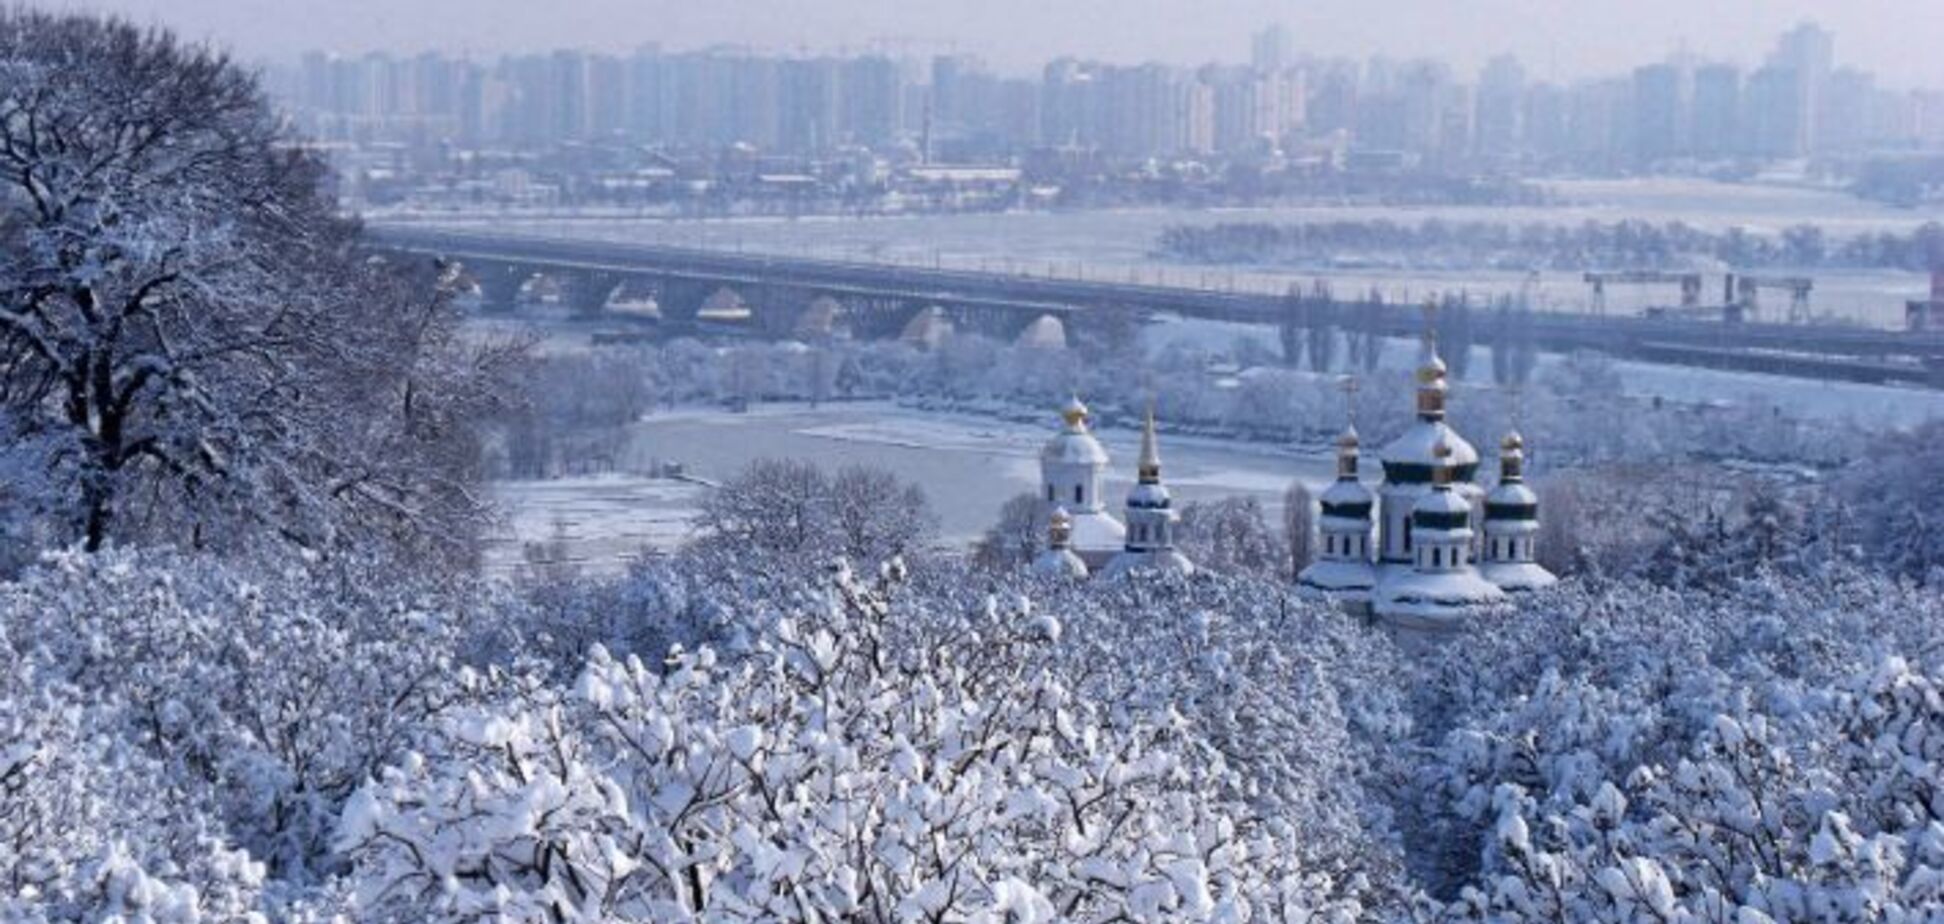 Приключения дончанина в Киеве: цените то, что имеете